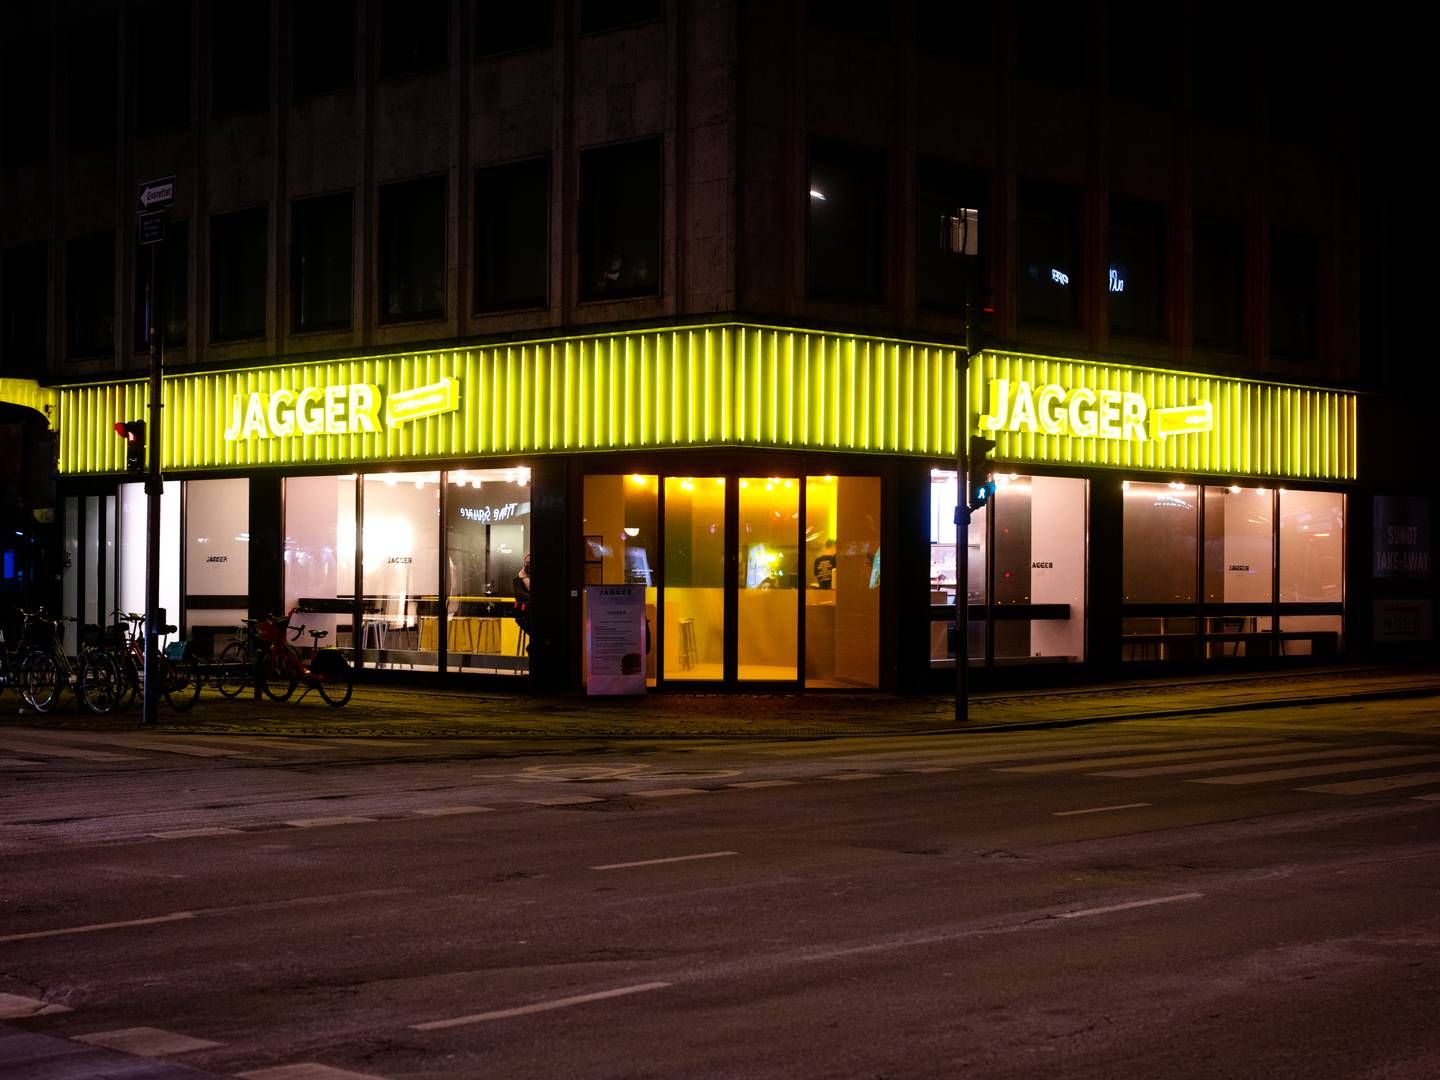 Jagger-kæden har fortsat håb for den norske forretning trods en svær start. Billedet er fra restauranten ved Rådhuspladsen i København. | Foto: Valdemar Ren